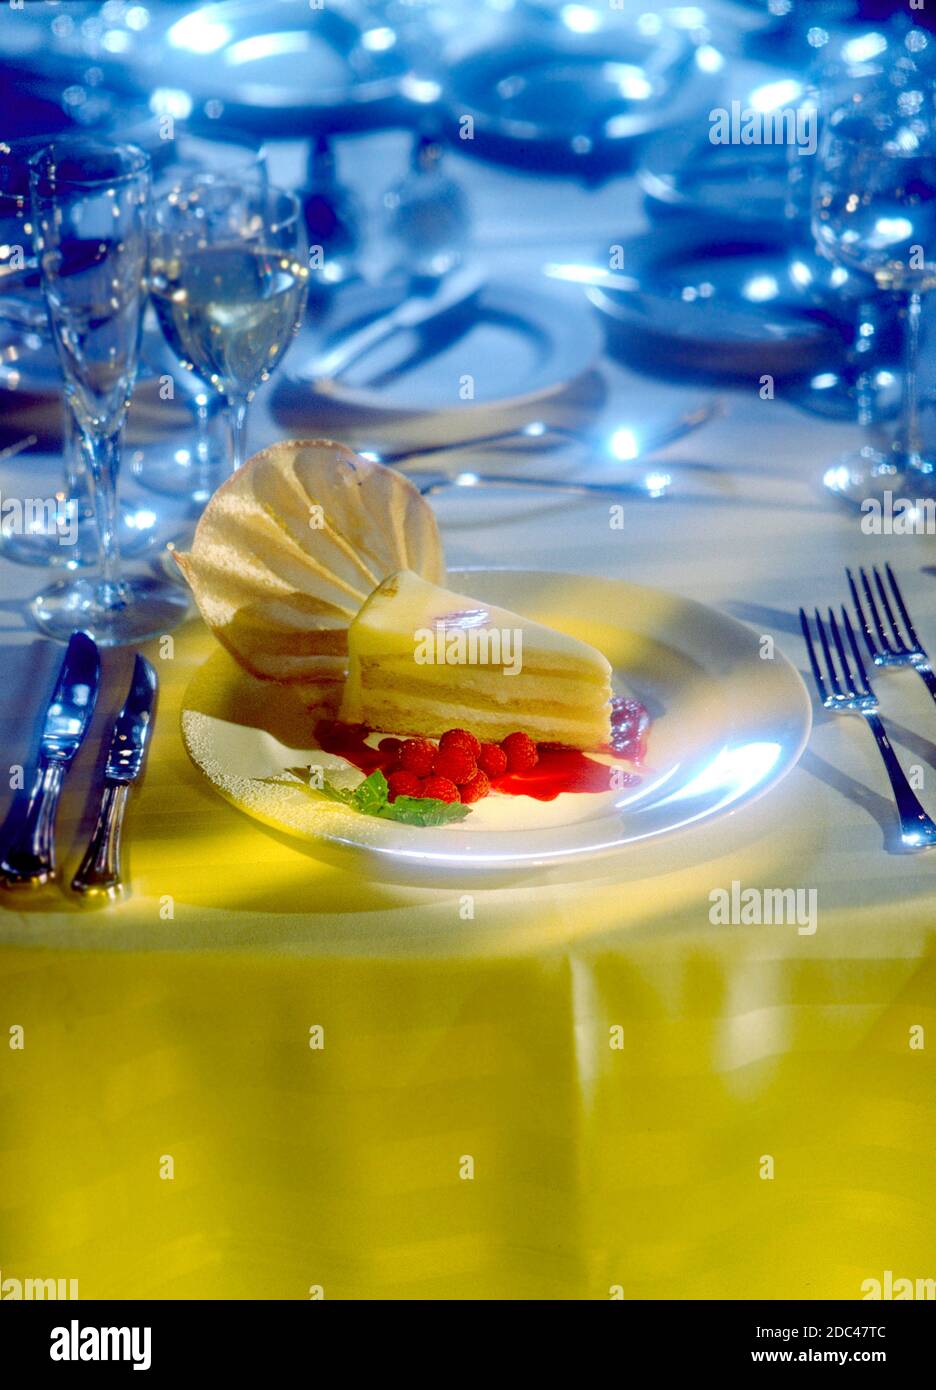 Una fetta di torta stratificata di gateau con glassa di crema alla vaniglia con lamponi nella spettacolare fotografia verticale. Impostazione formale. Foto Stock